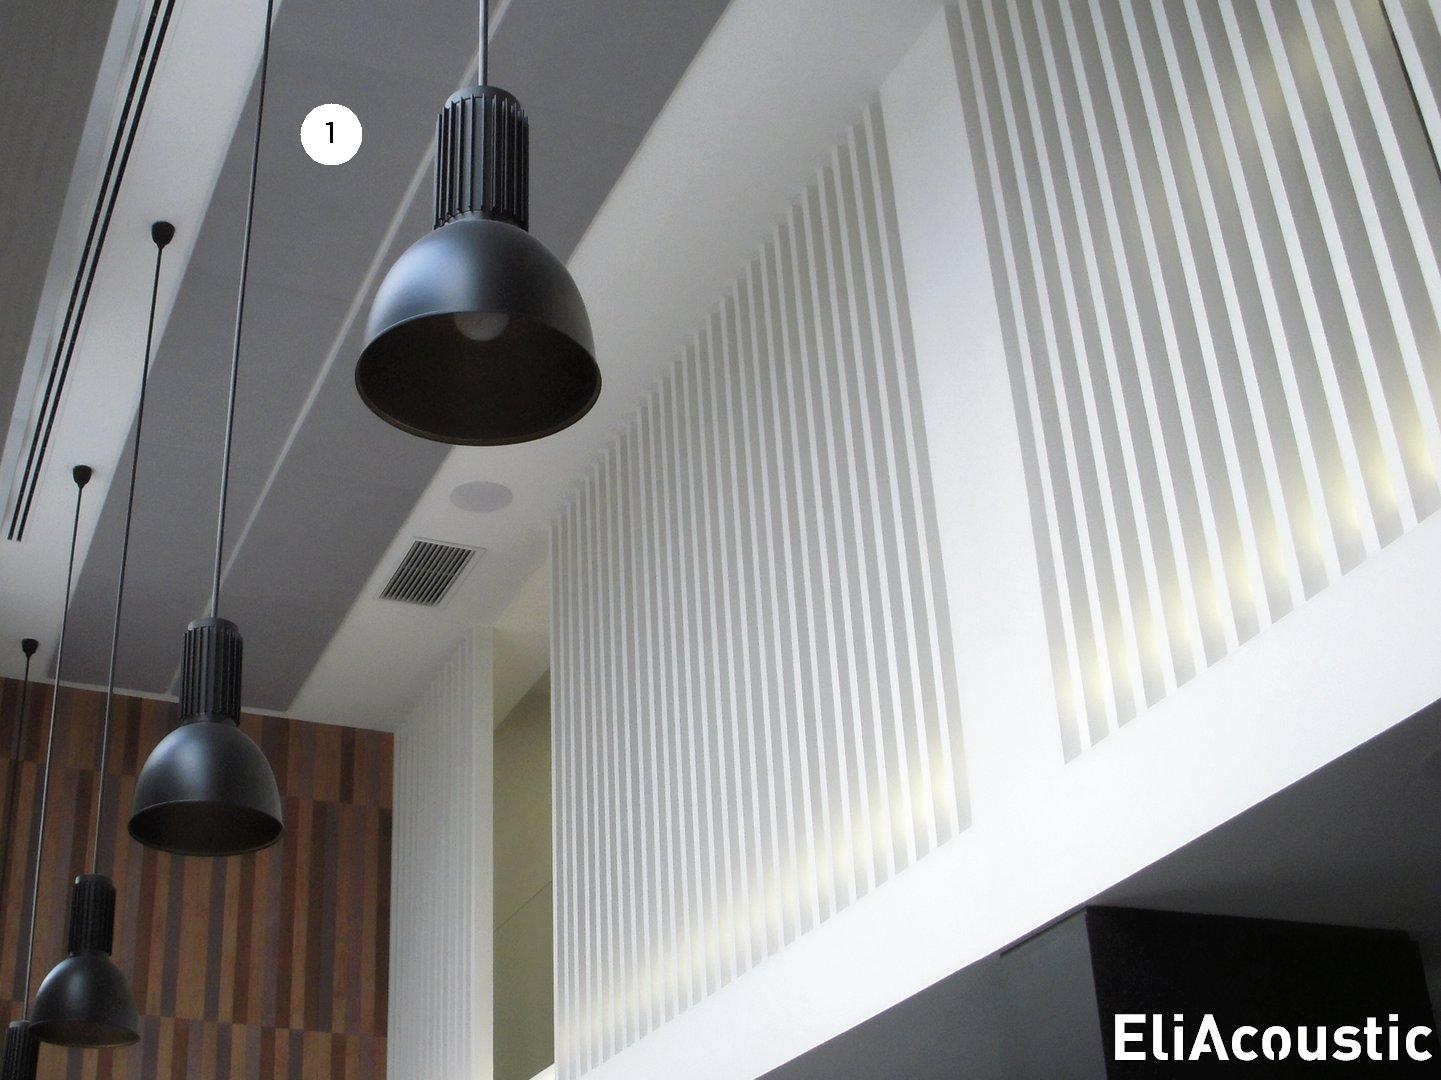 Reducir ruido restaurante con paneles decorativos